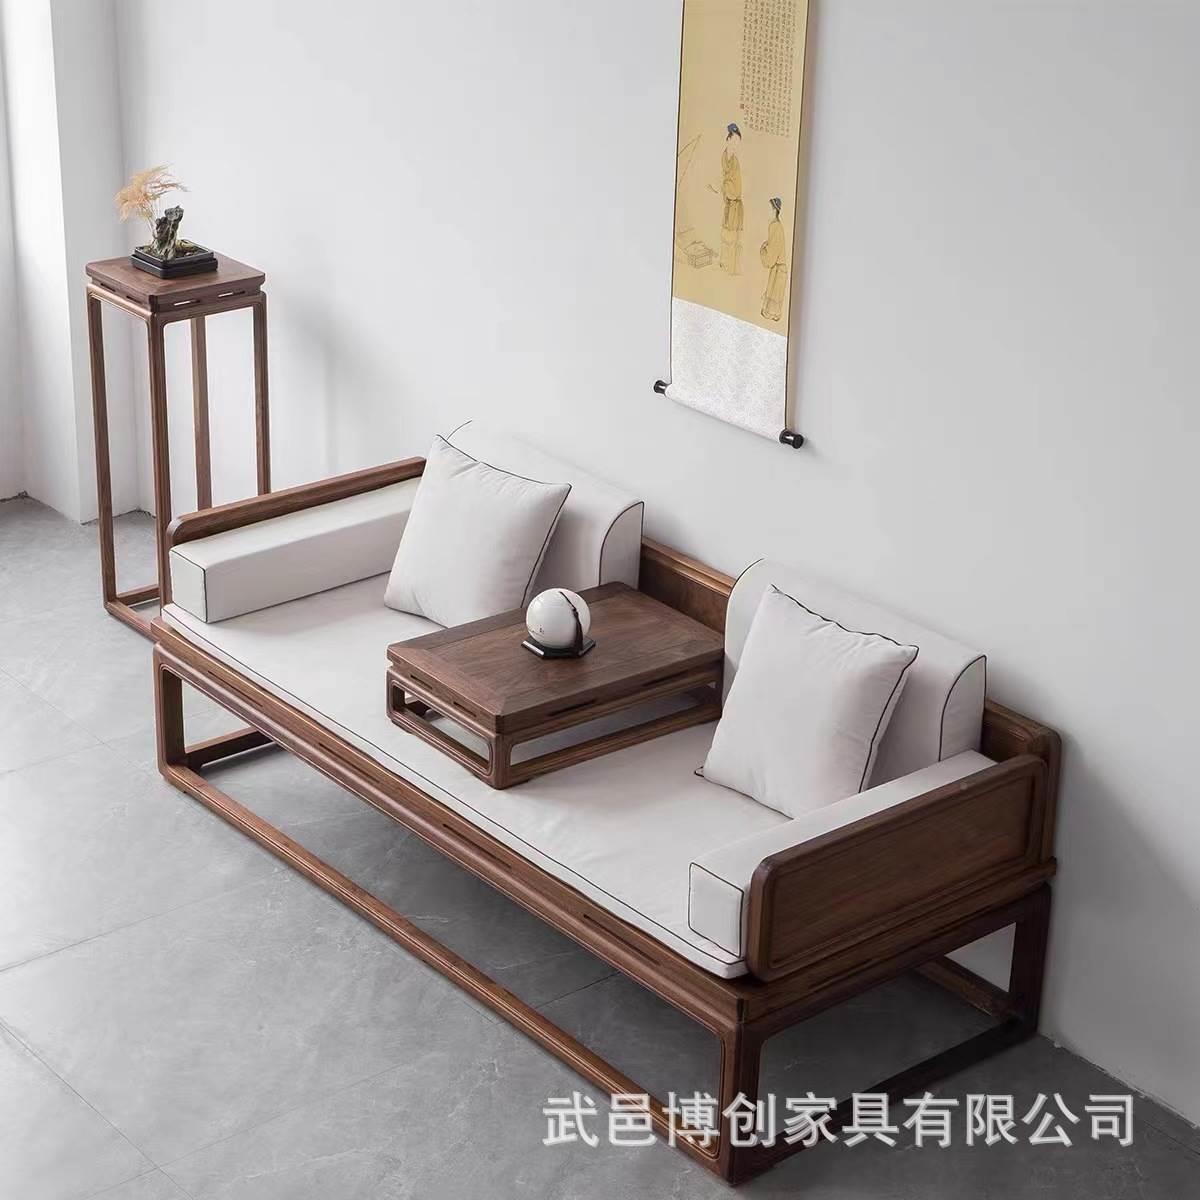 新中式老榆木罗汉床罗汉榻美人榻中式家具单人榻榻米沙发床客厅